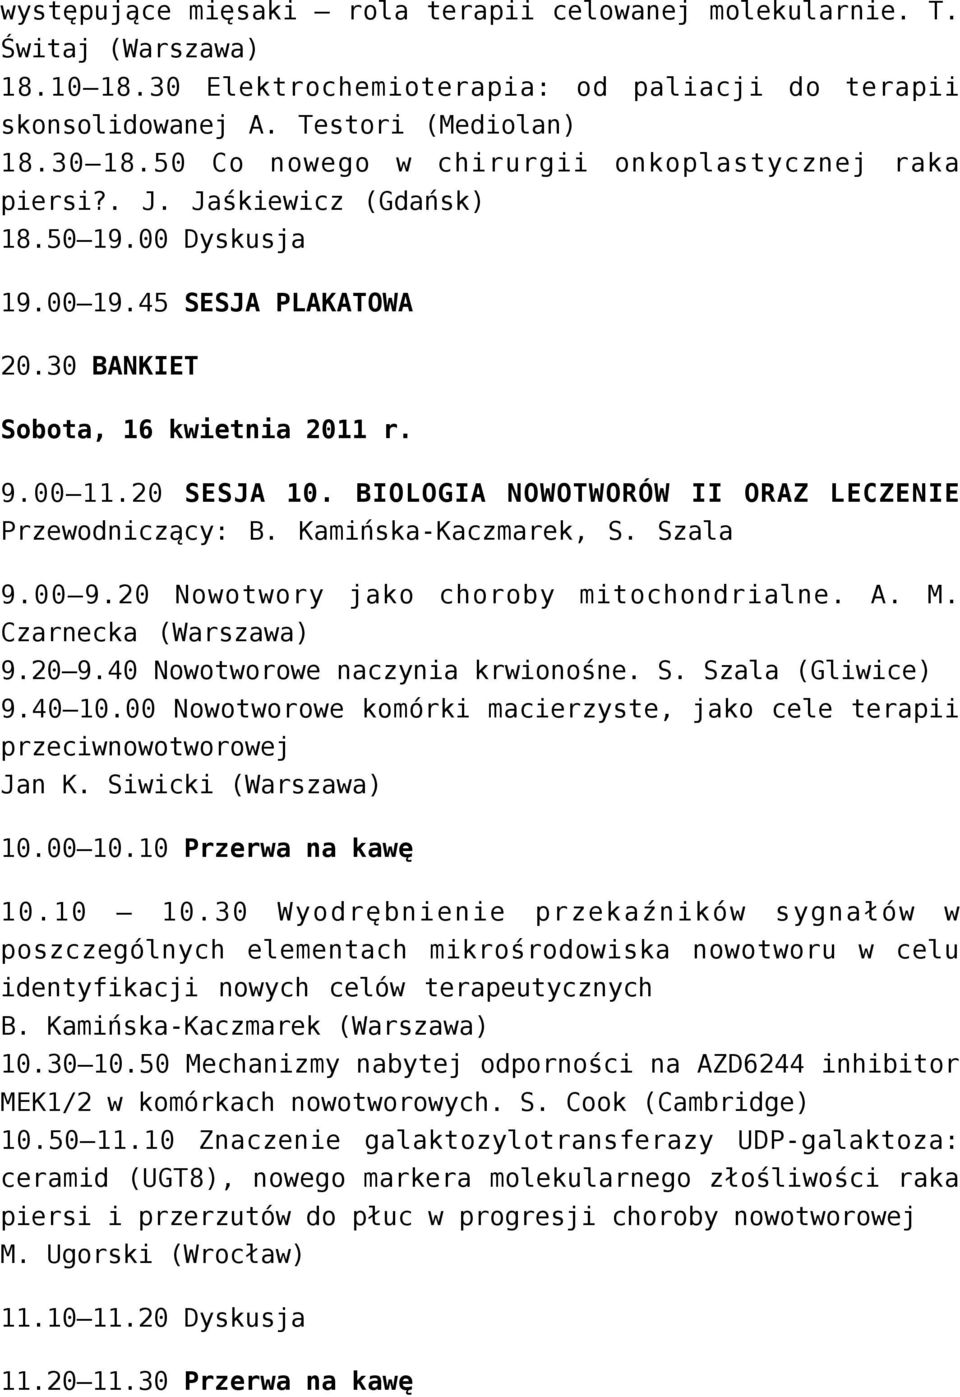 BIOLOGIA NOWOTWORÓW II ORAZ LECZENIE Przewodniczący: B. Kamińska-Kaczmarek, S. Szala 9.00 9.20 Nowotwory jako choroby mitochondrialne. A. M. Czarnecka (Warszawa) 9.20 9.